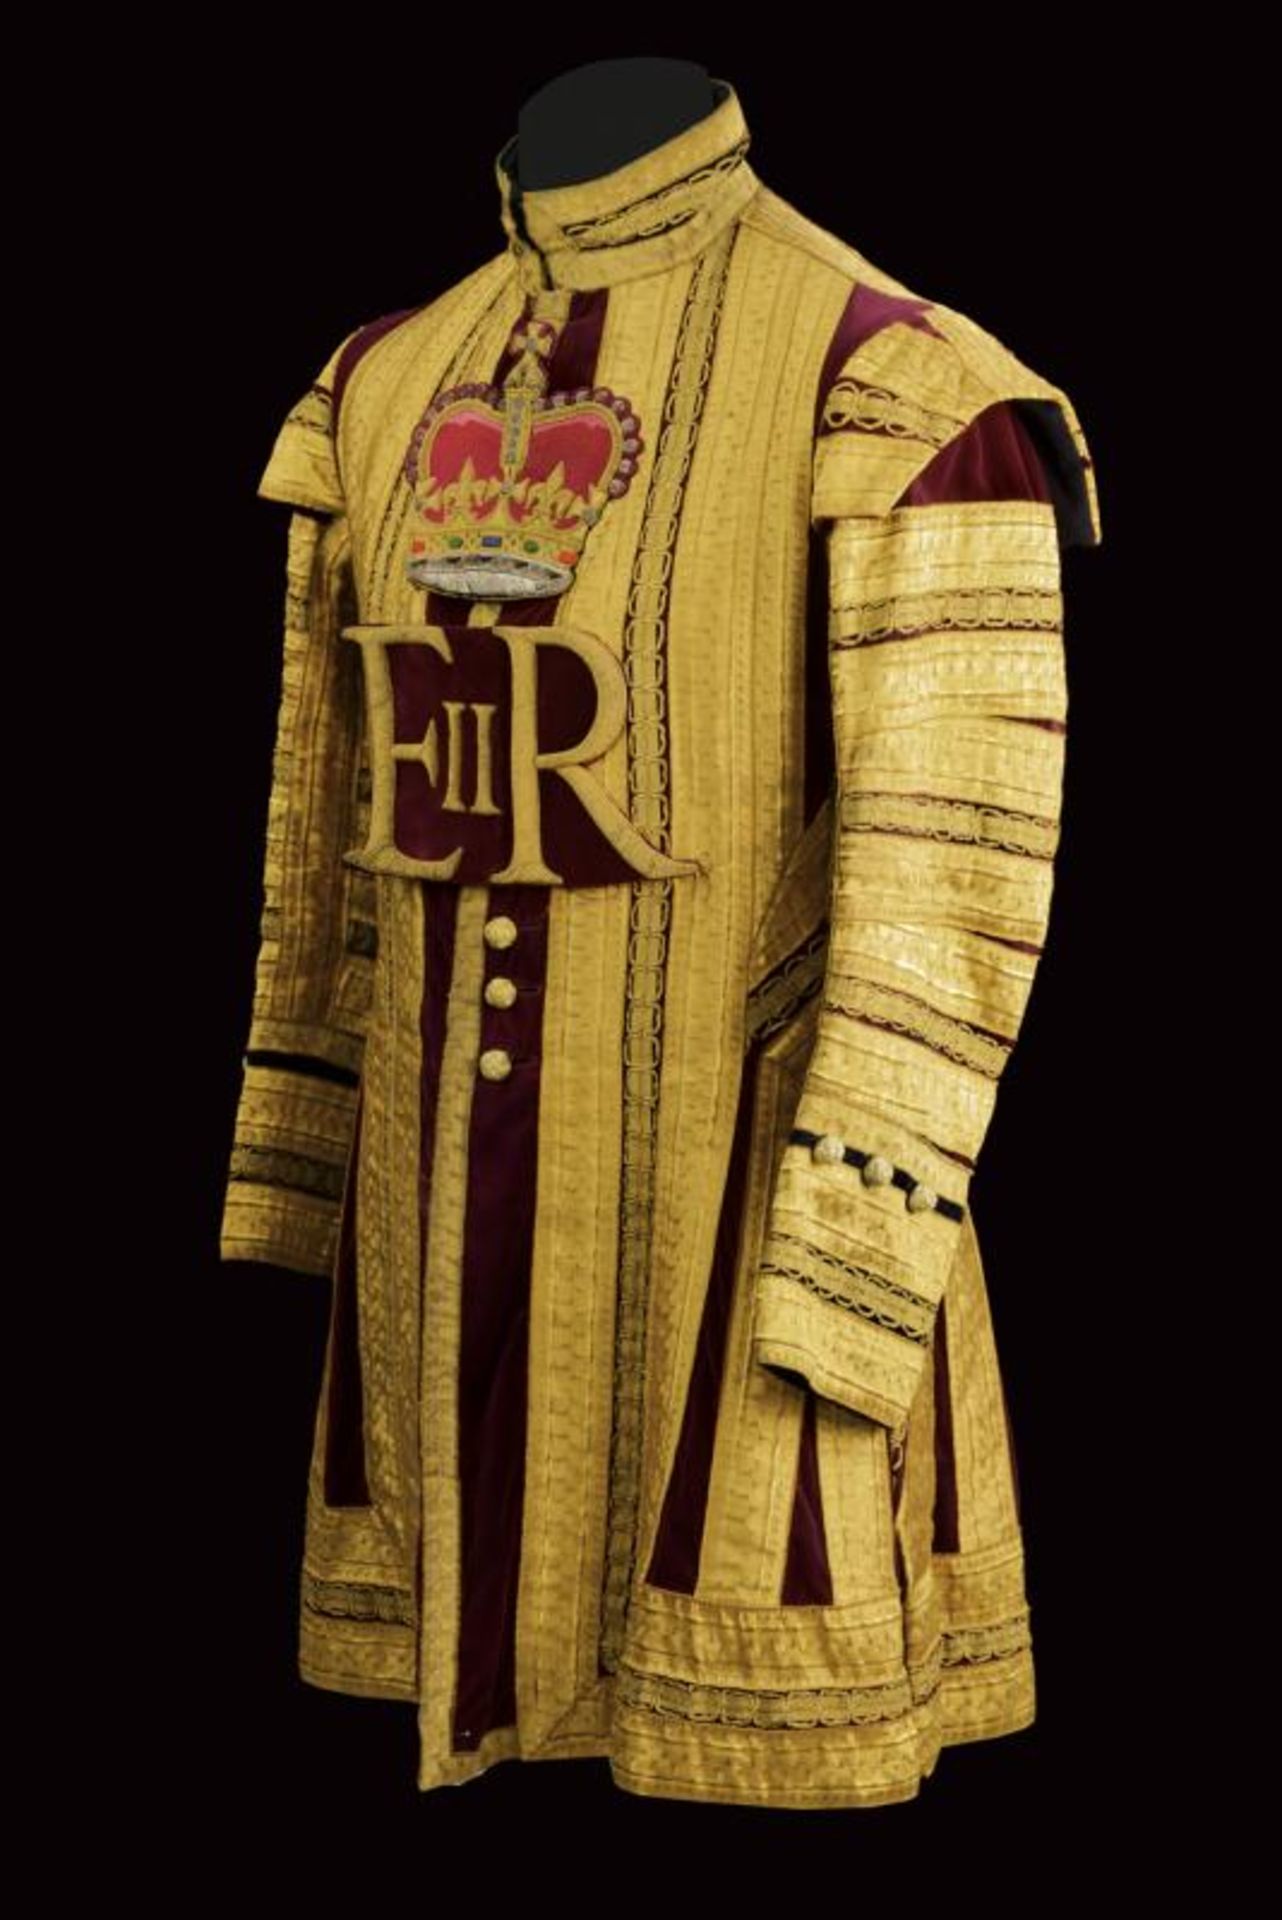 A drum major's uniform, epoch Queen Elisabeth II